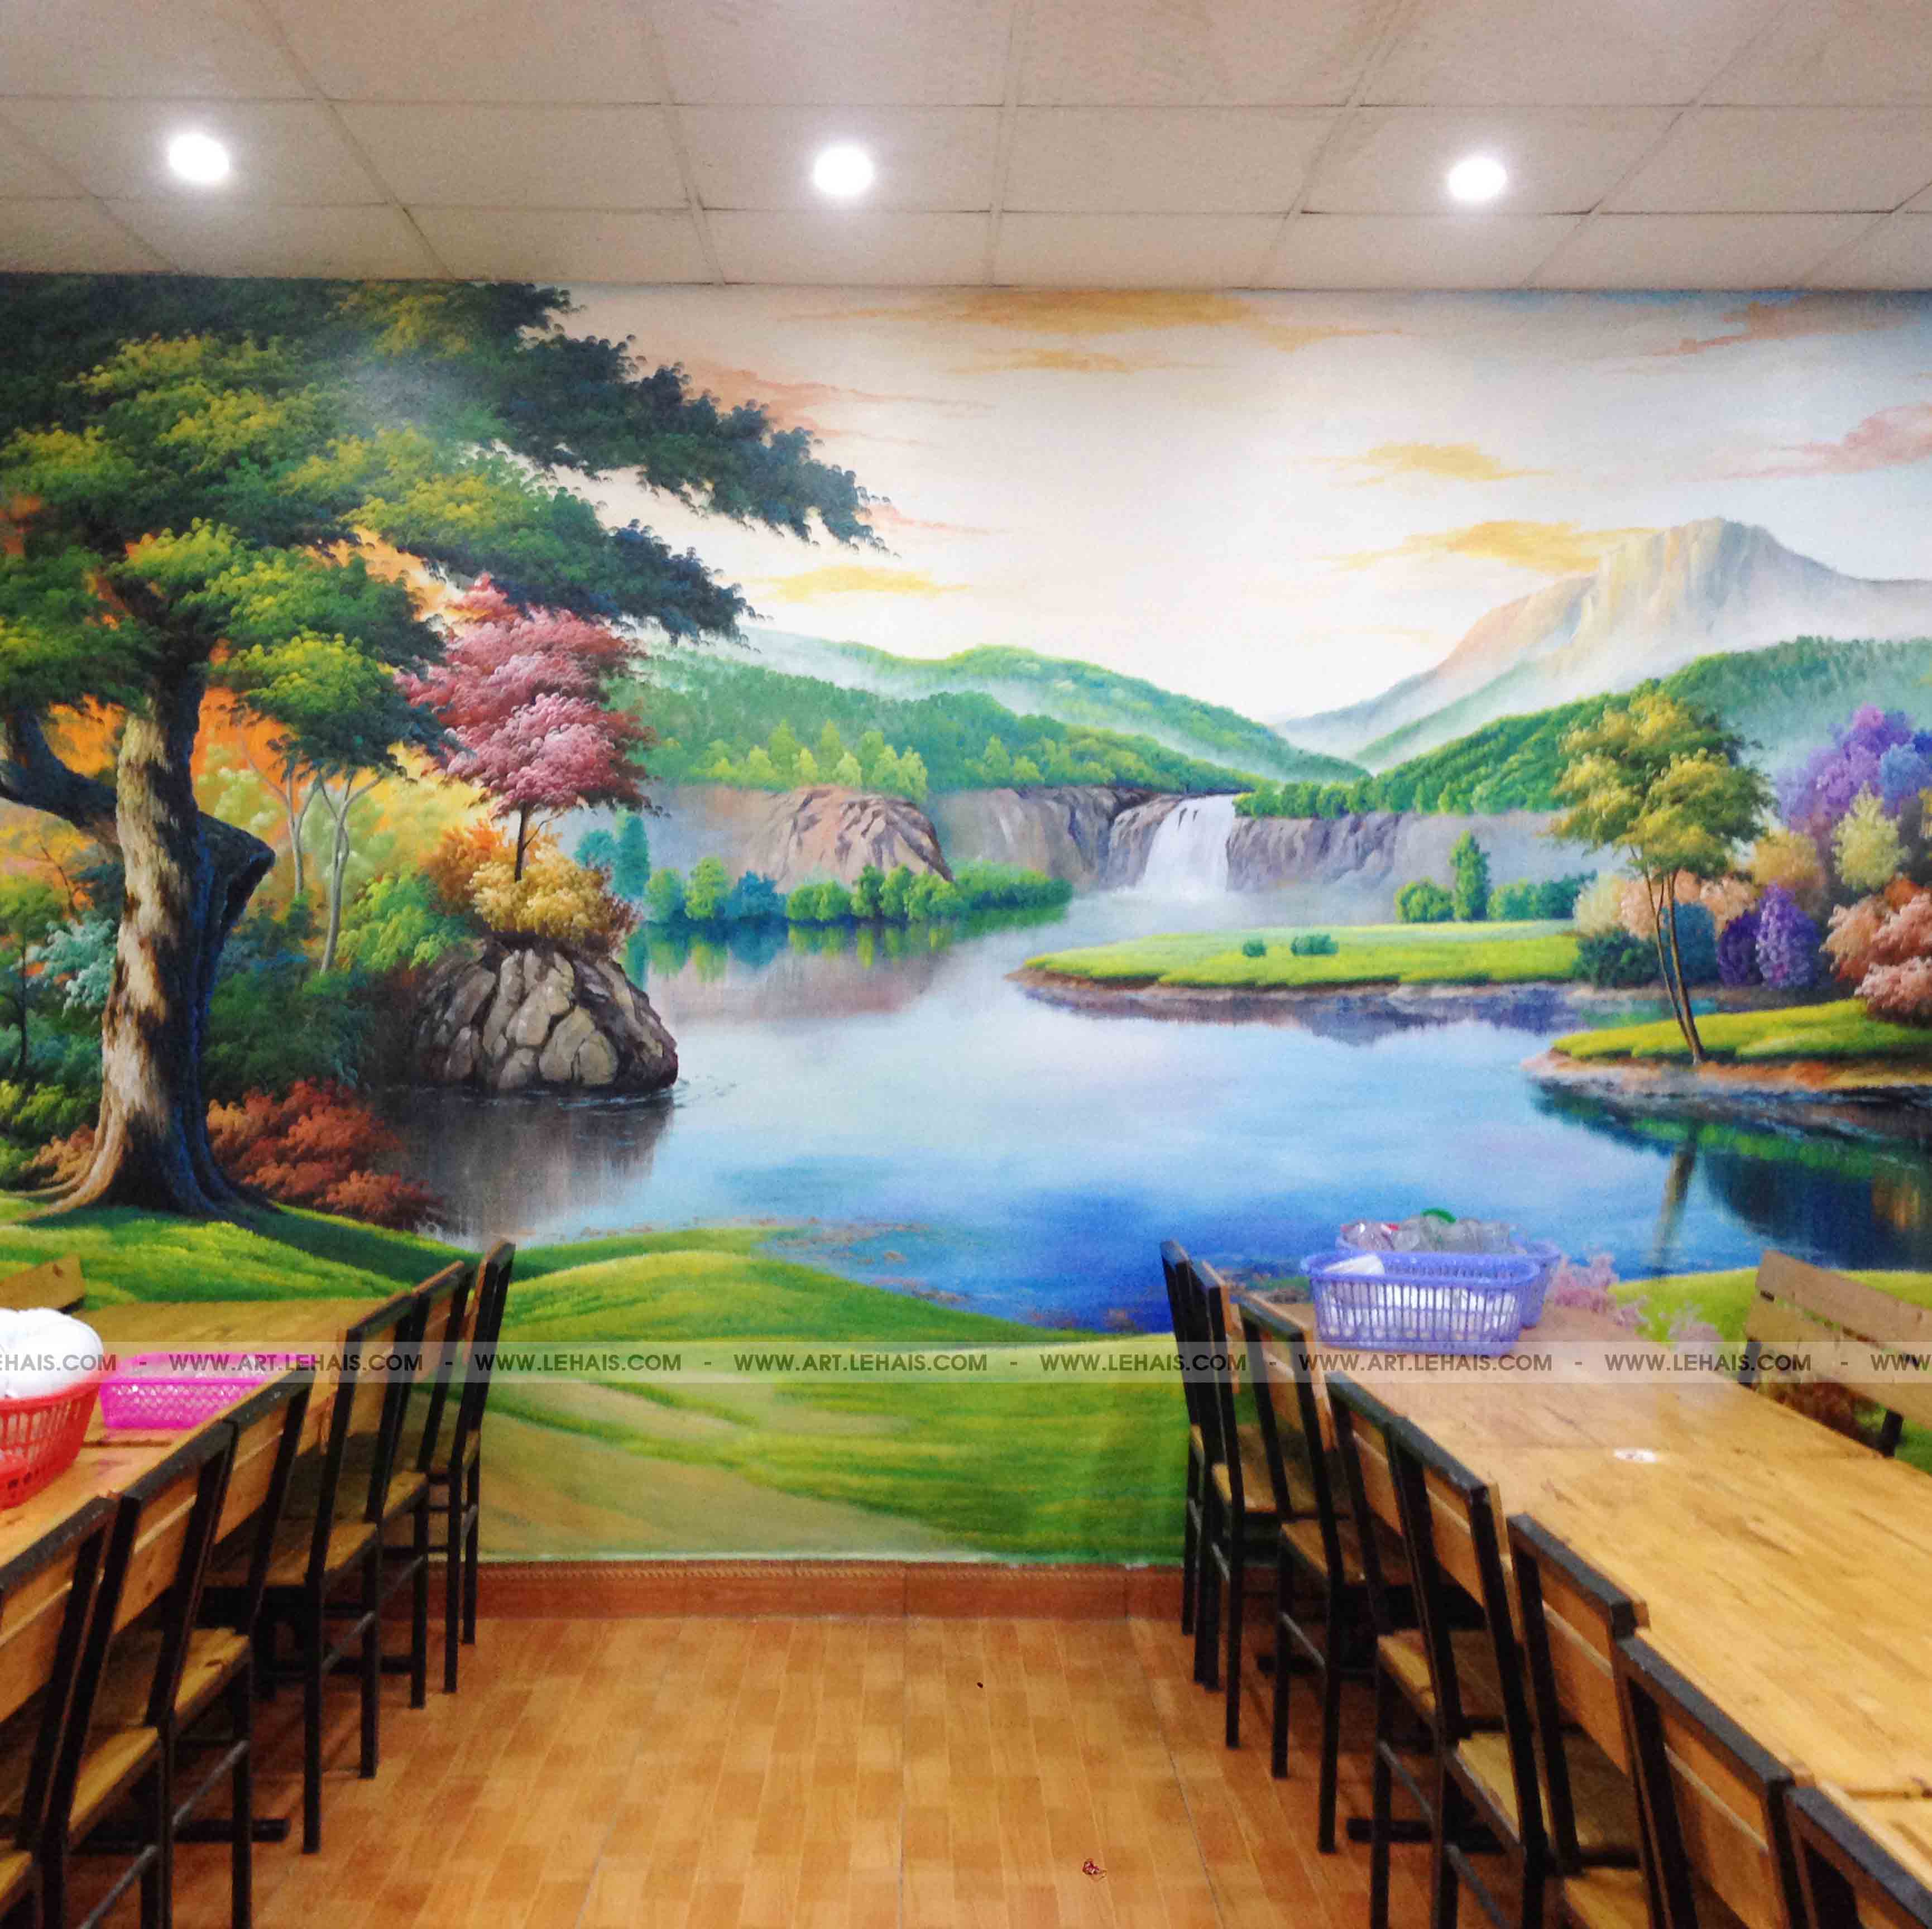 Vẽ tranh 3D phong cảnh tại nhà hàng ở phố Nối, Hưng Yên - TT108LHAR